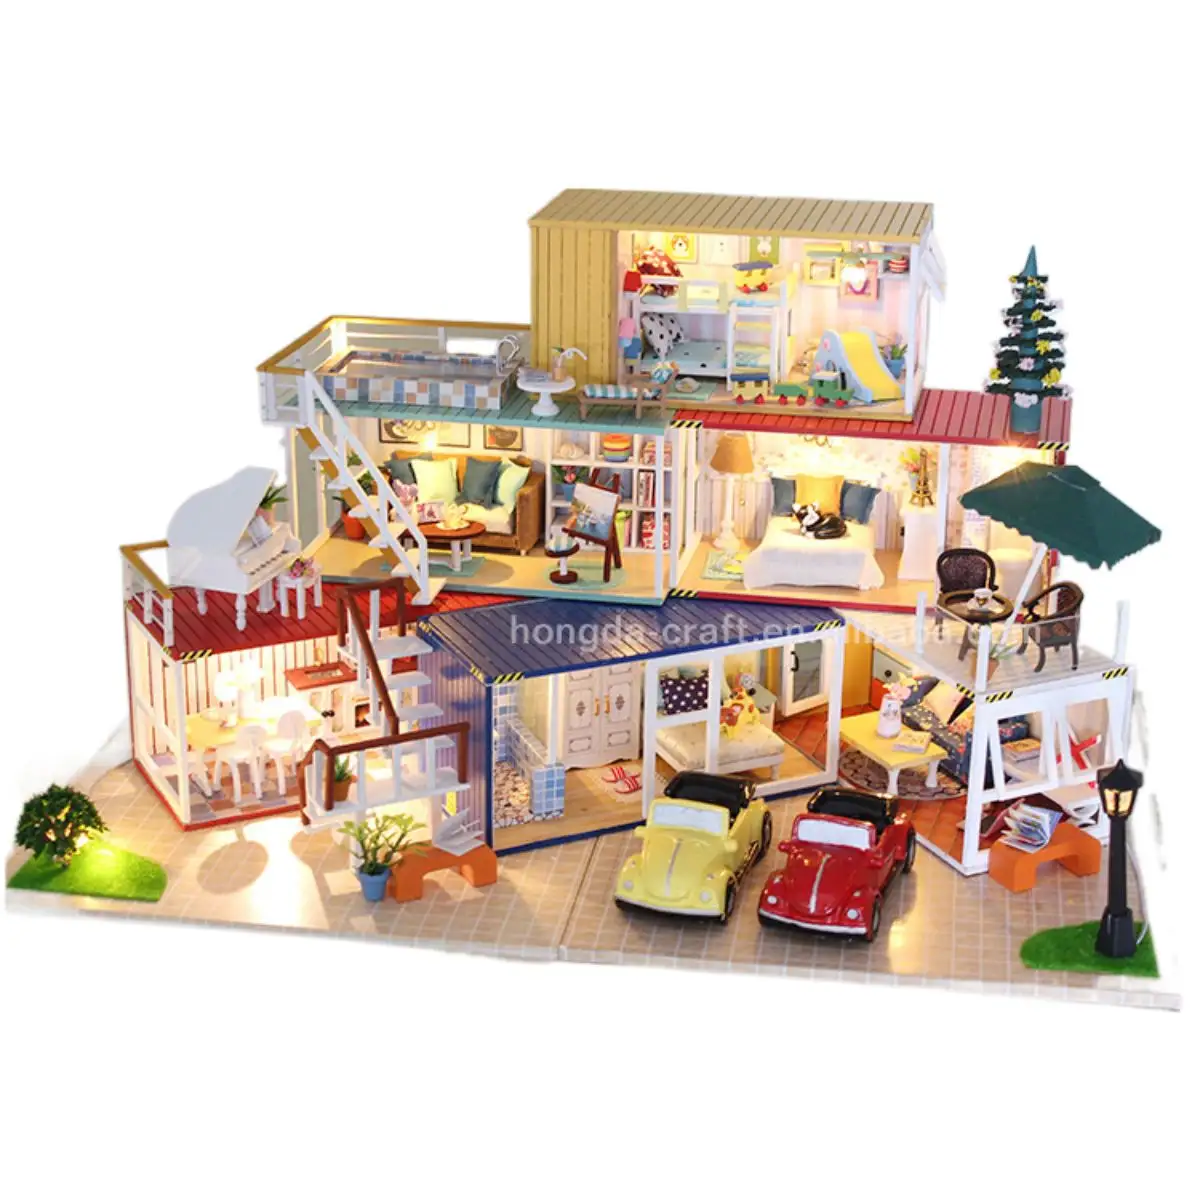 Jouet artisanaux en bois Miniature, maison de poupées Extra grande, avec Garage, fabrication